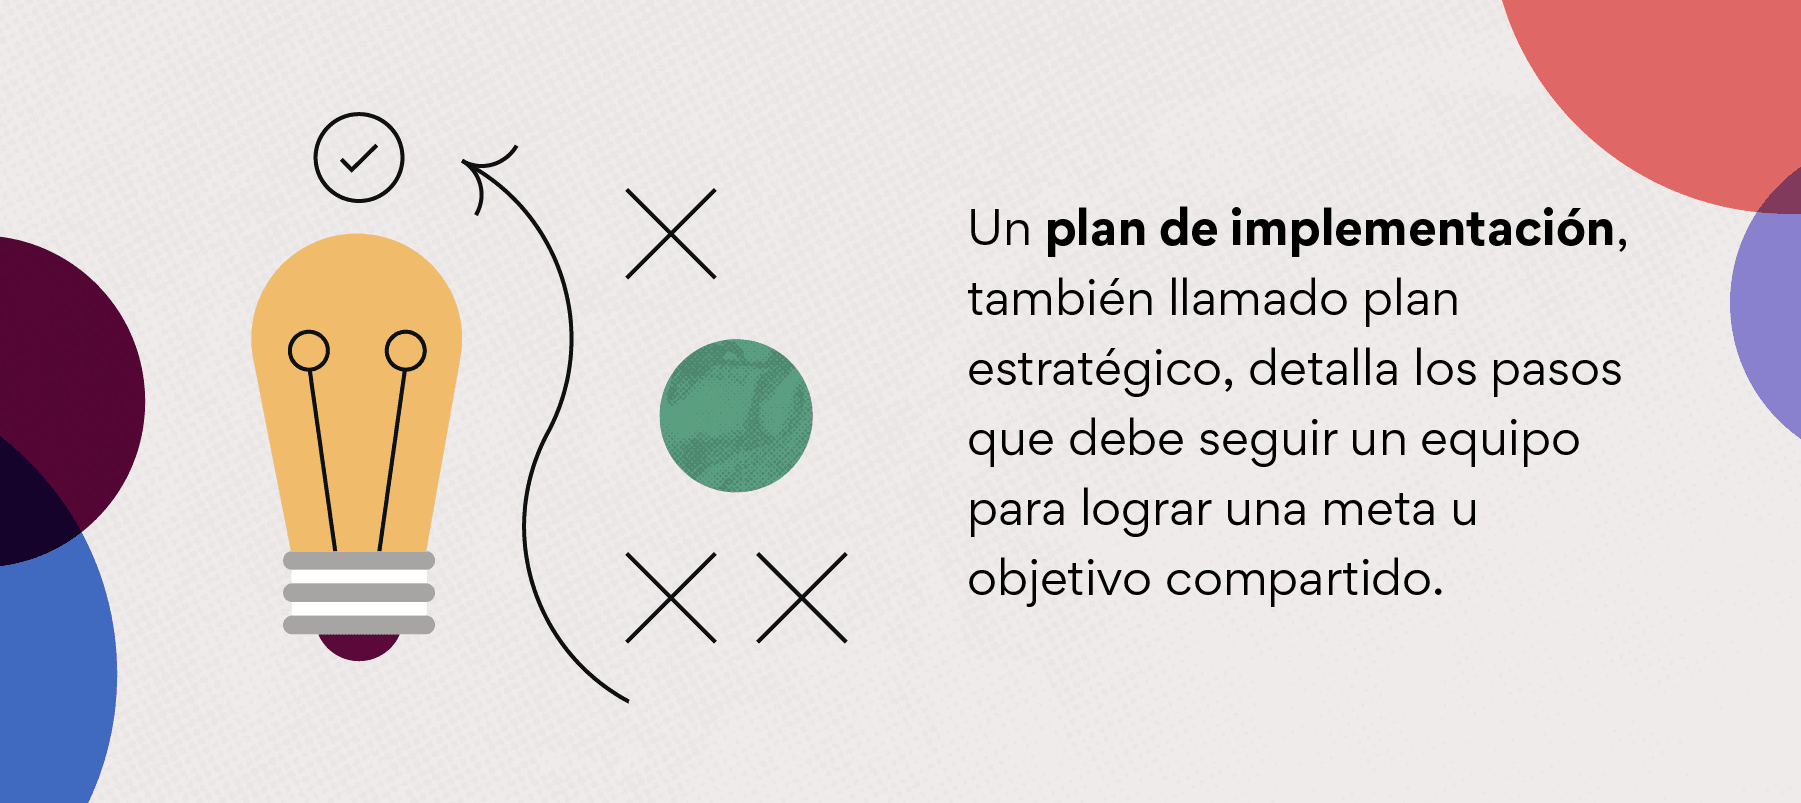 ¿Qué es un plan de implementación?